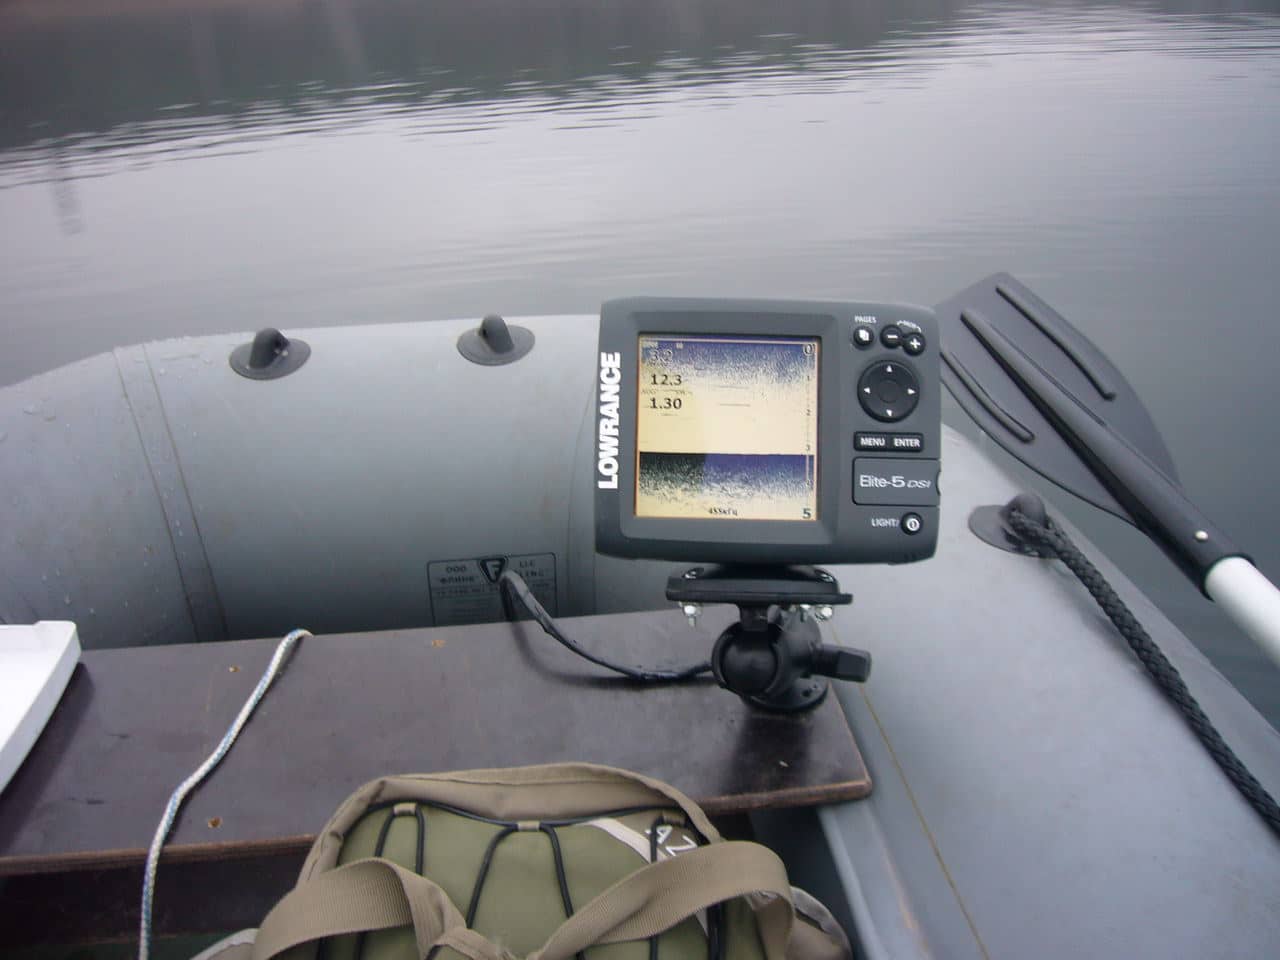 Как выбрать эхолот для рыбалки на лодку с мотором: однолучевой, трехлучевой и с gps-навигатором, выбор самого лучшего устройства и обзор с видео